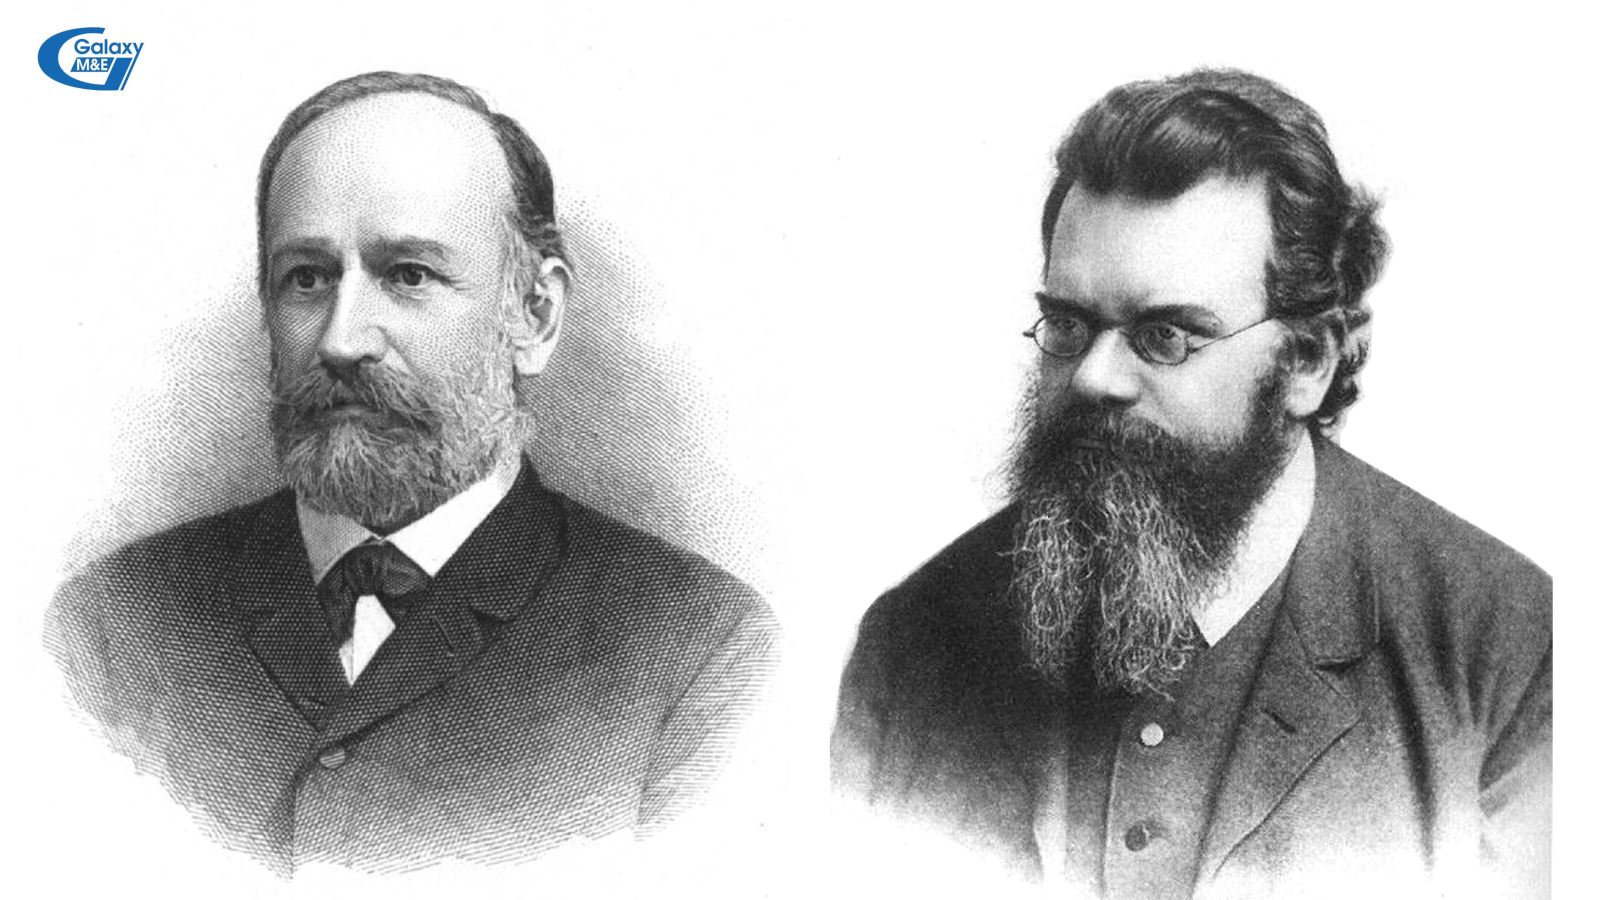 Nhà Vật lý học Josef Stefan (1835 - 1893) bên trái và Ludwig Eduard Boltzmann (1844 - 1906) bên phải.